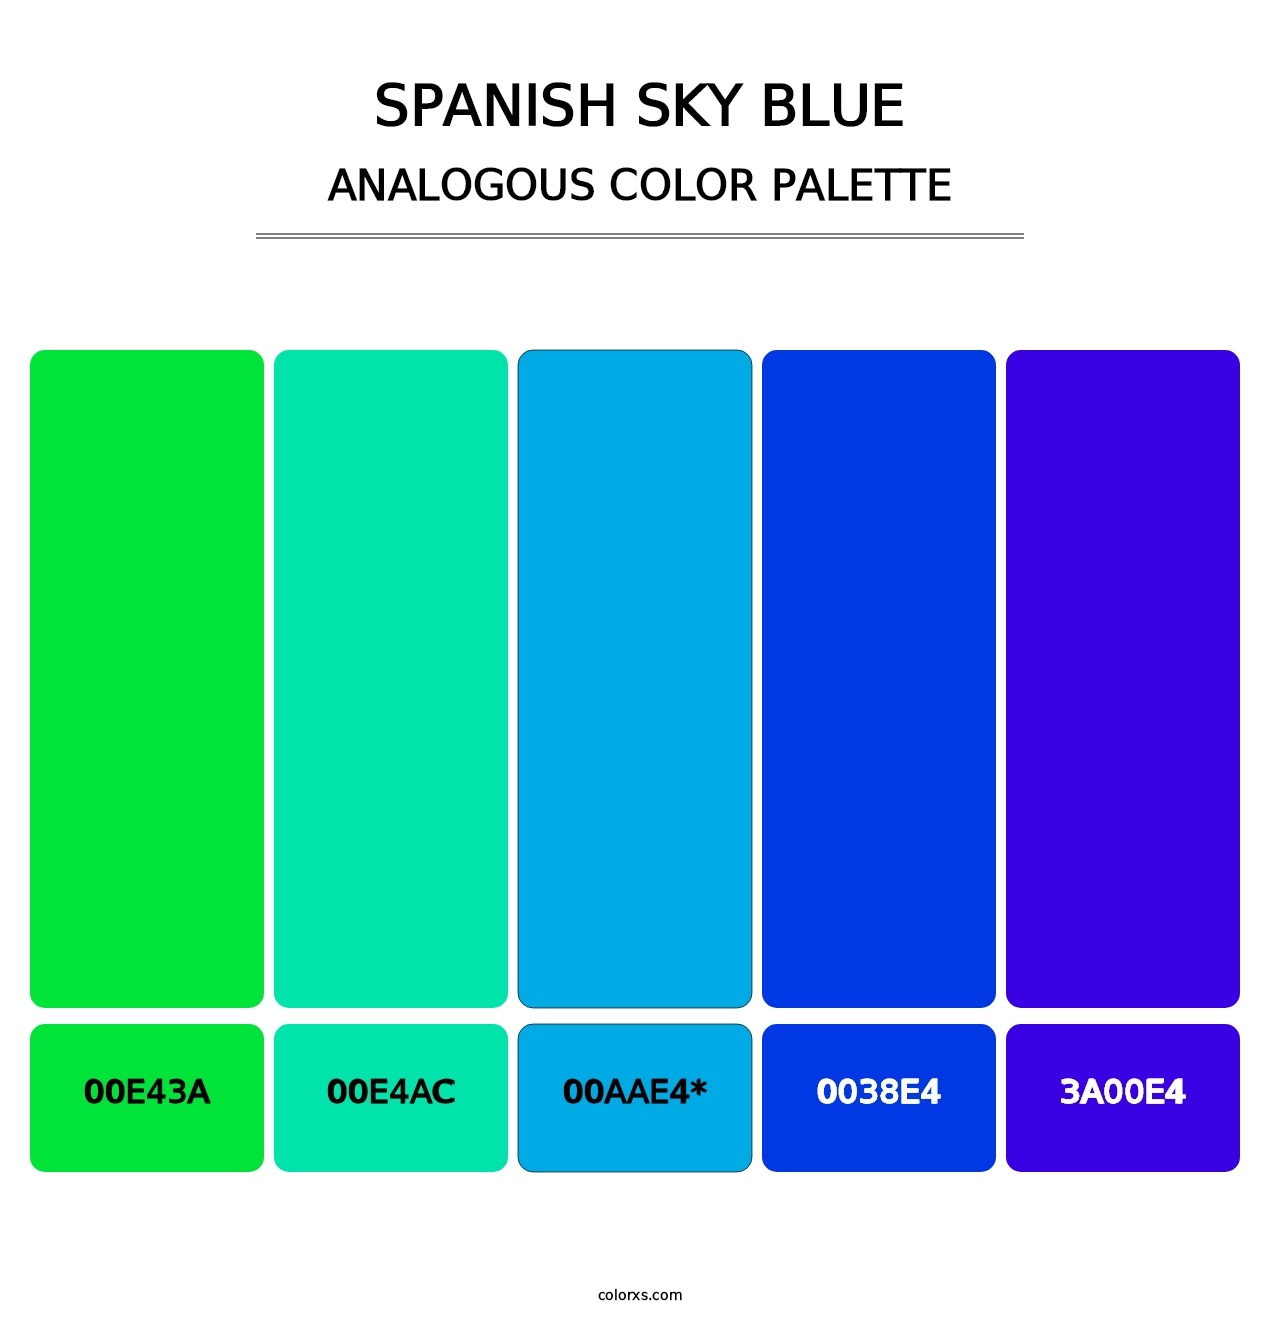 Spanish Sky Blue - Analogous Color Palette